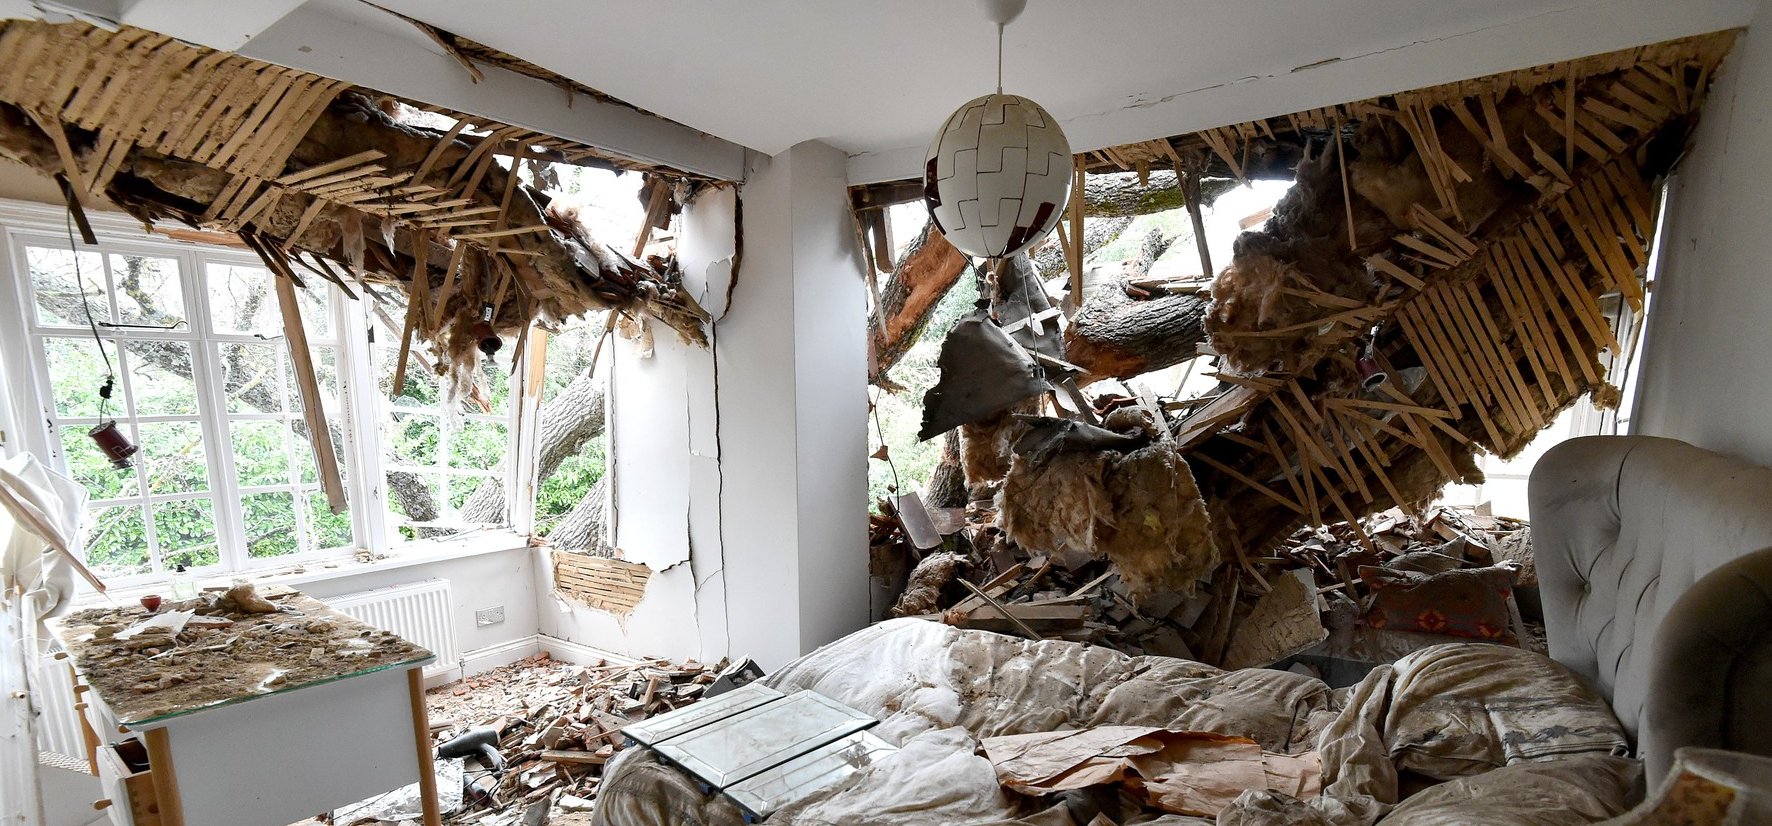 Egy 400 éves tölgy tette tönkre a házukat – siránkozás helyett inkább elmentek berúgni